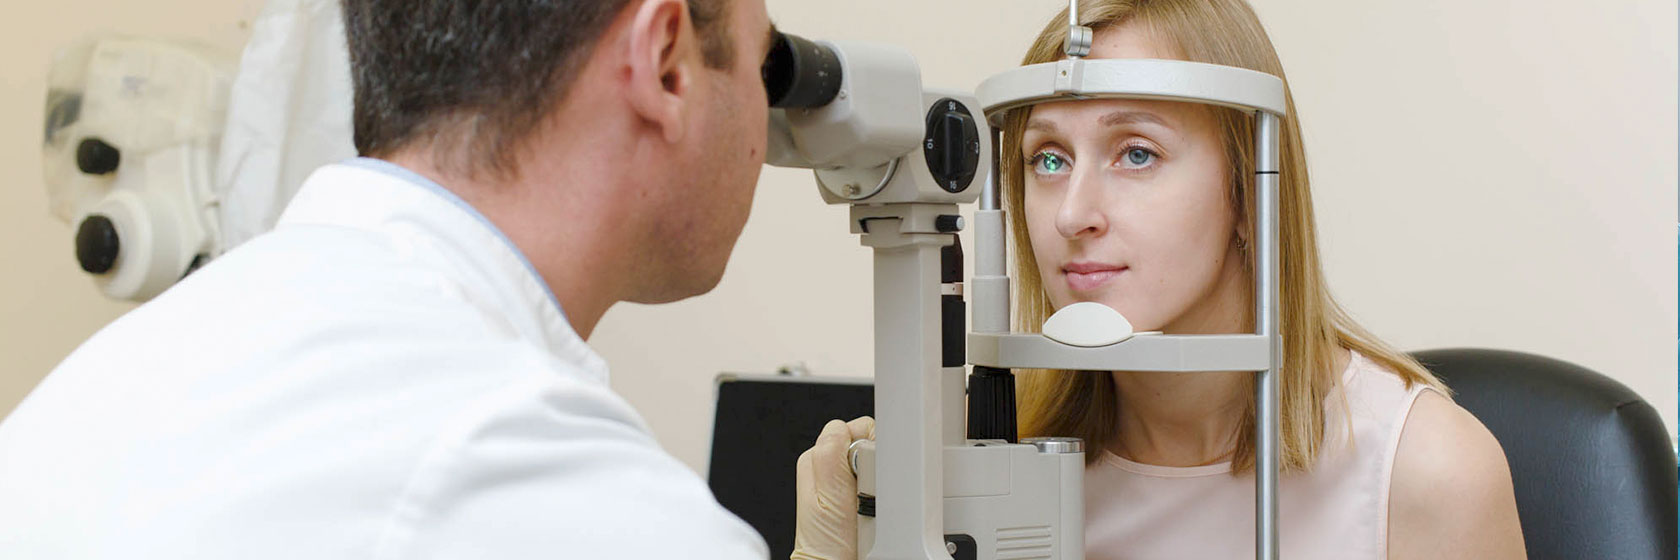 Врач офтальмолог проводит инструментальный осмотр глазного дна пациентки